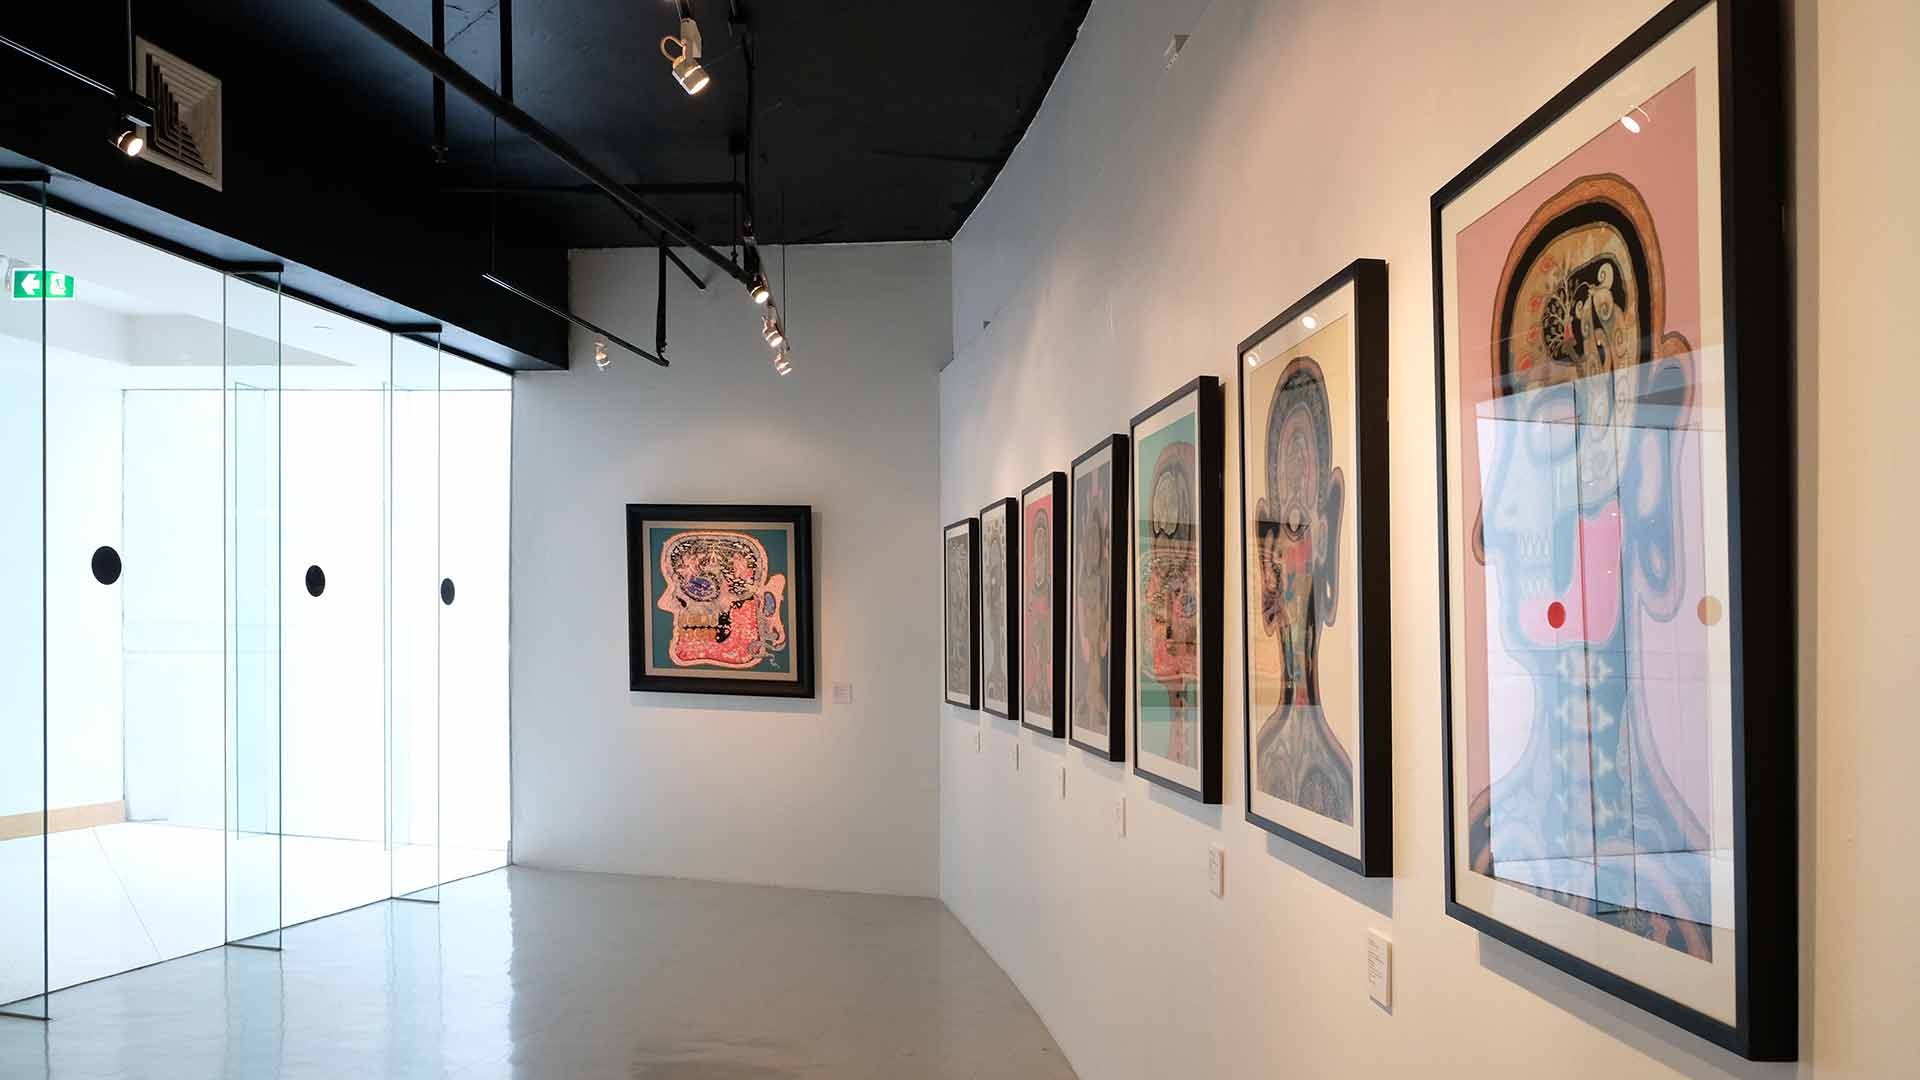 Exhibition The Last House By Vatcharapong Kanakrut | นิทรรศการ บ้านหลังสุดท้าย โดย วัชรพงษ์ คณะครุฑ